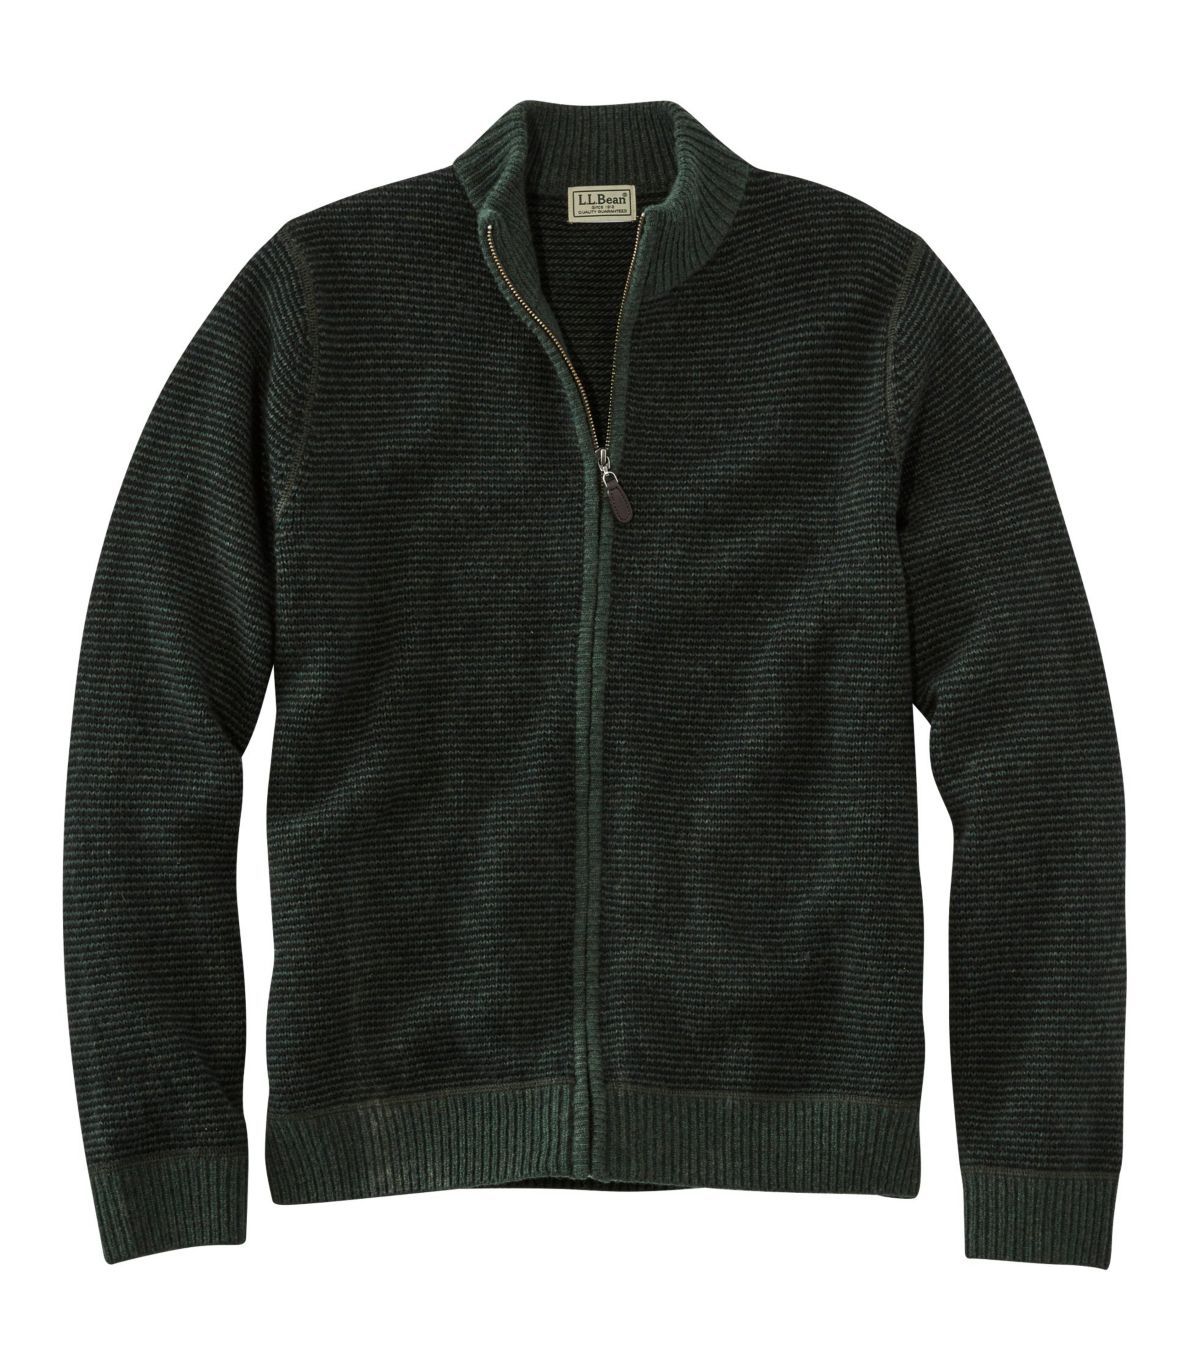 Washable Merino Wool Sweater, Full Zip